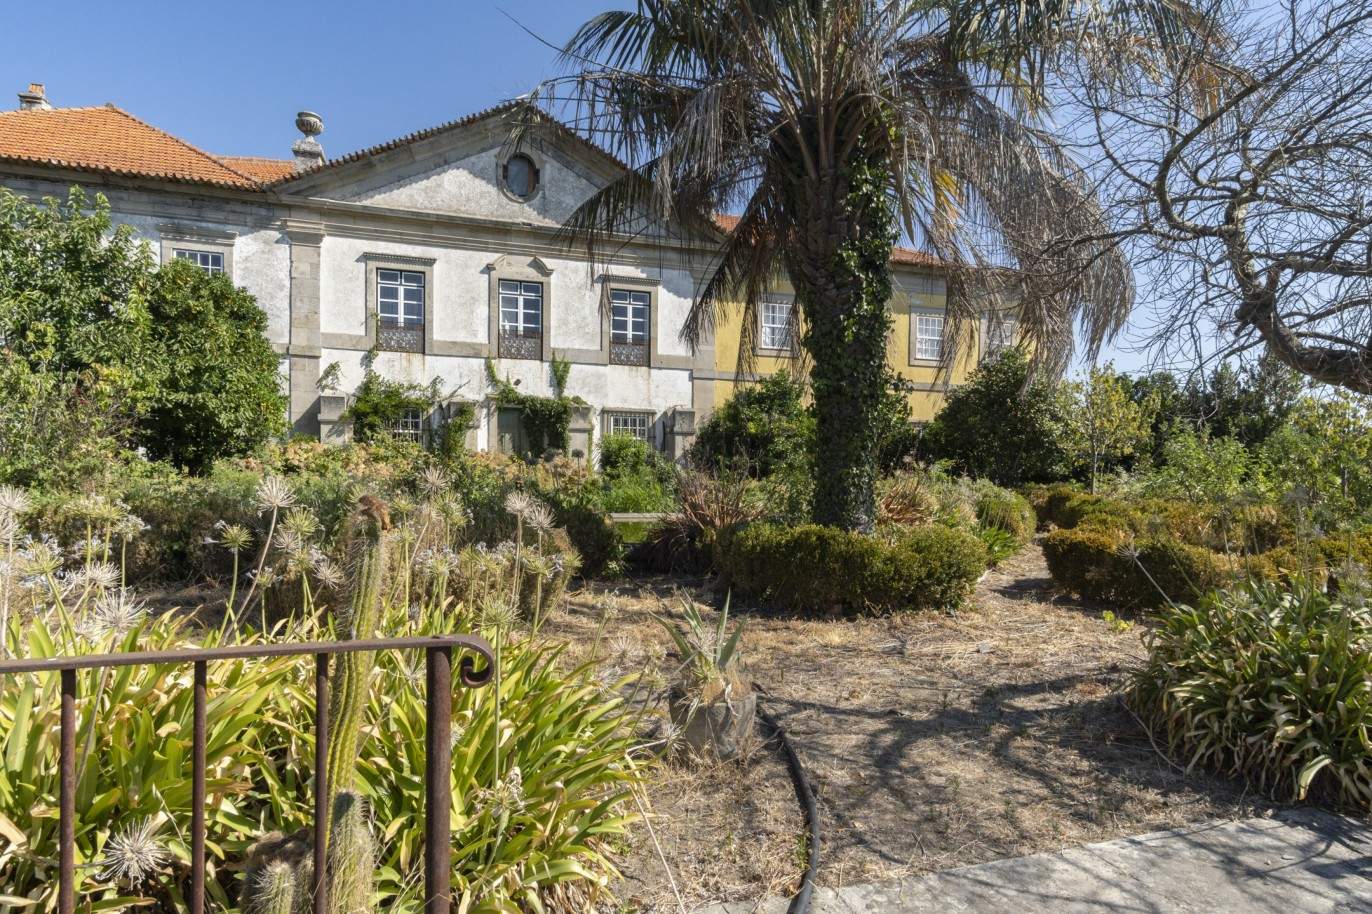 Venda: Palacete para restaurar com jardins, Lamego, Alto Douro _207374